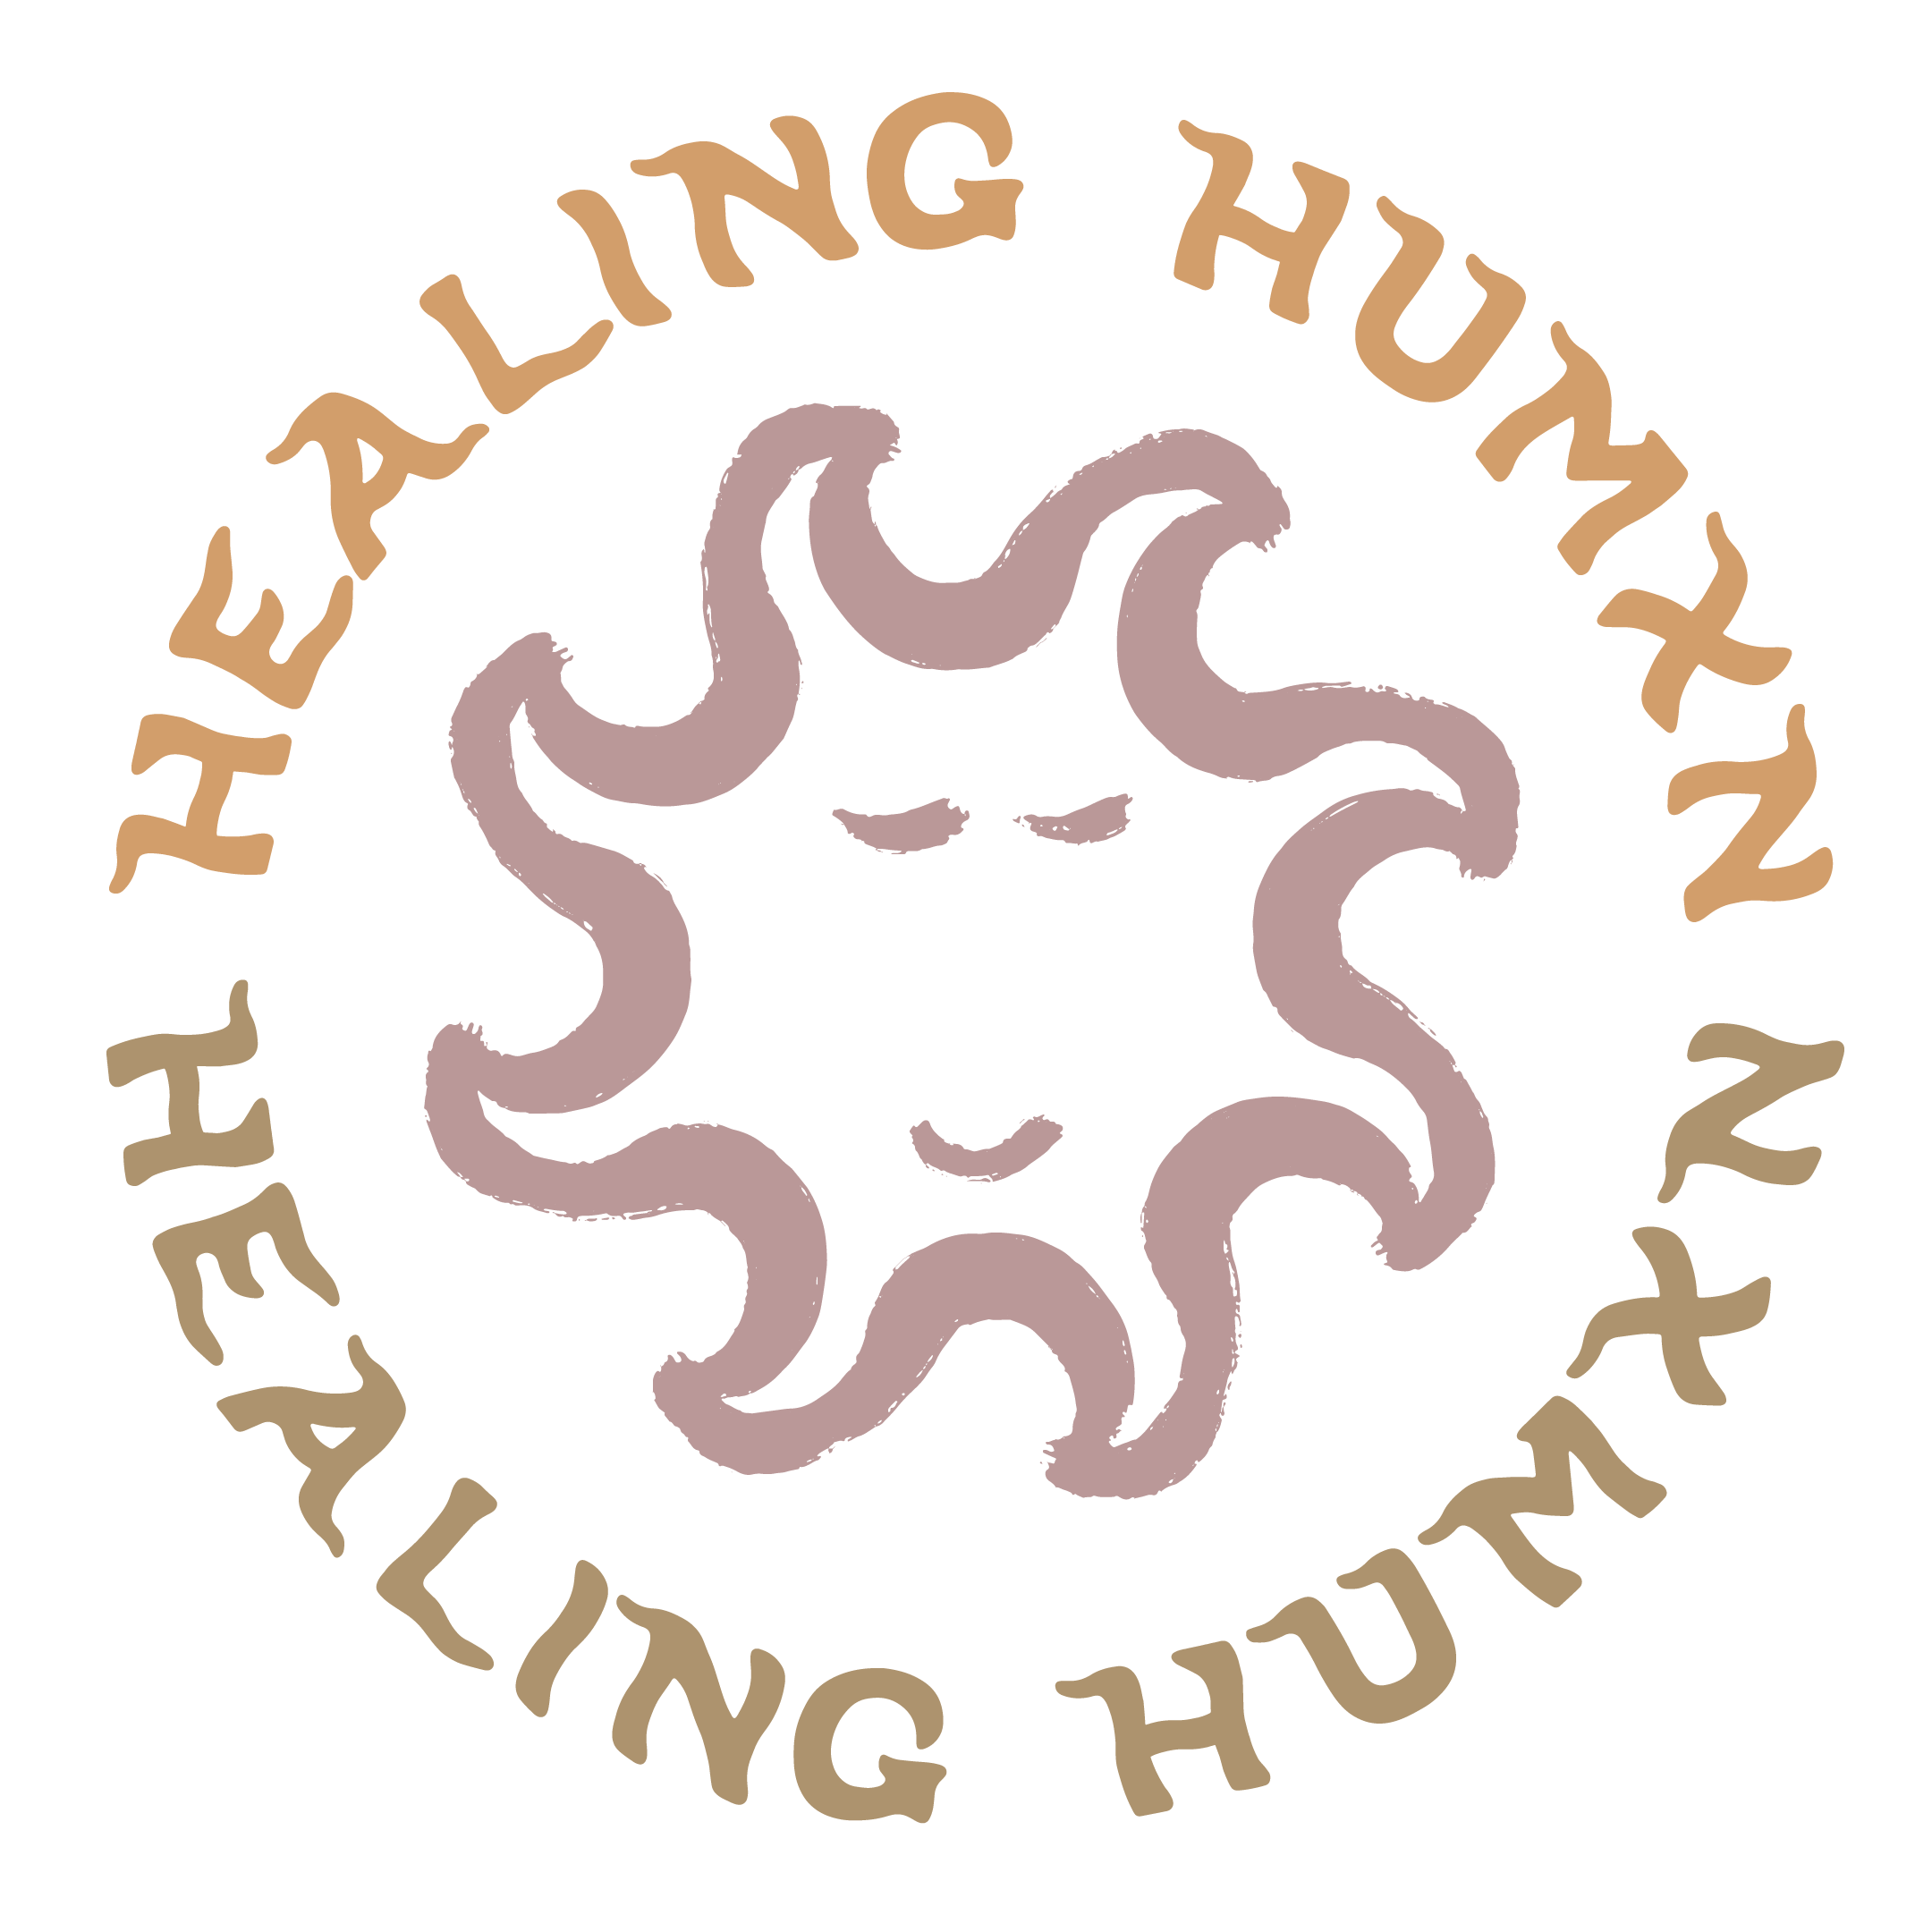 Healing Humxn